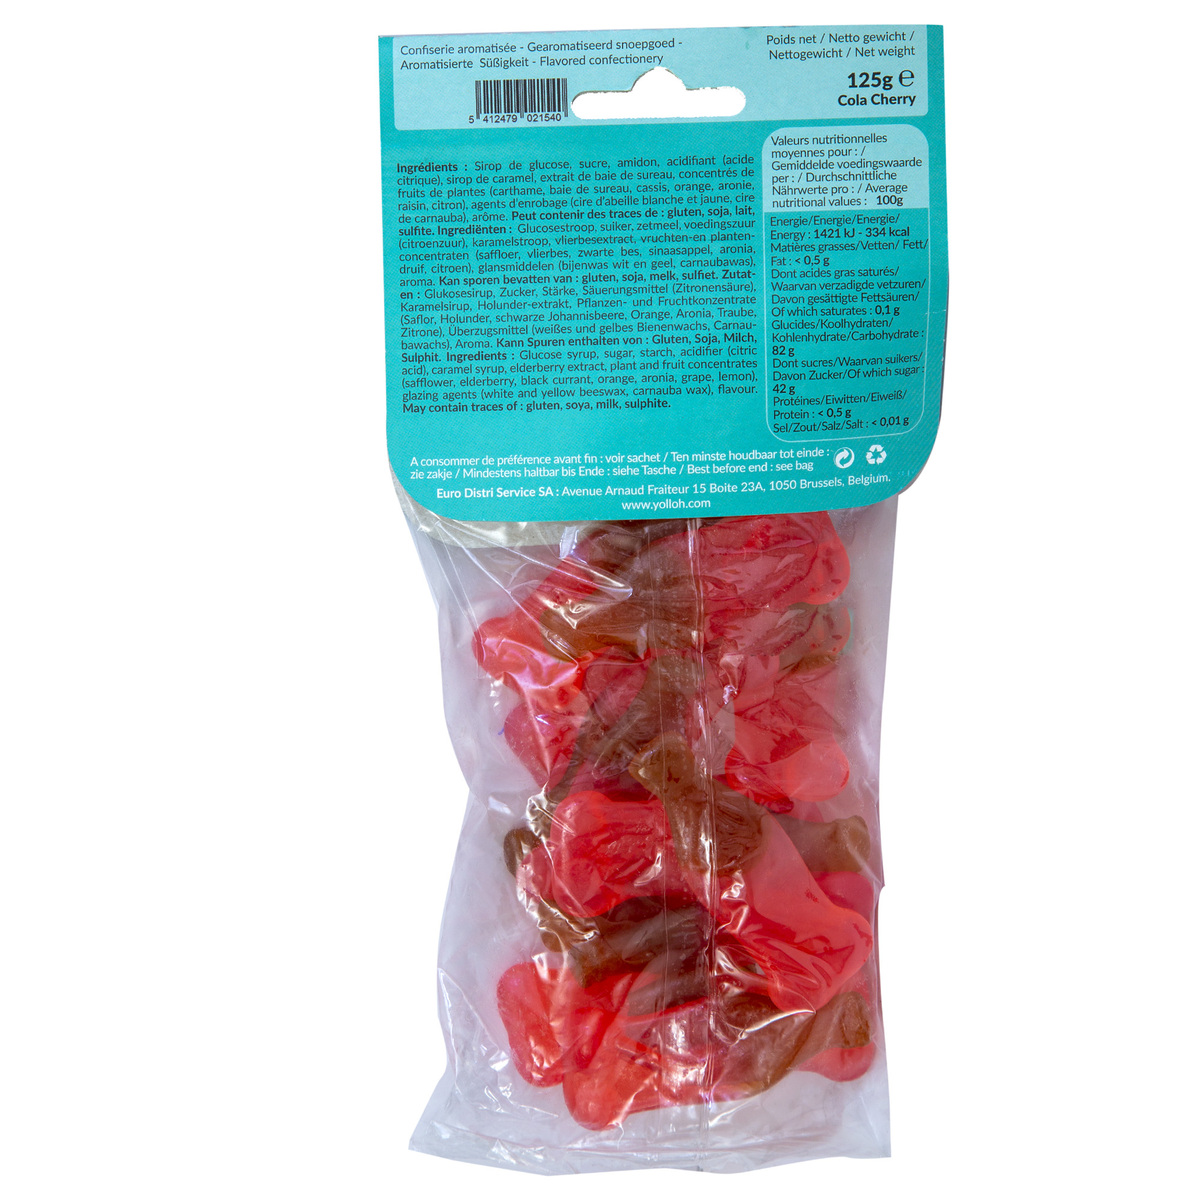 Yolloh Cola Cherry 125g Candy Bags Lulu Uae 3003